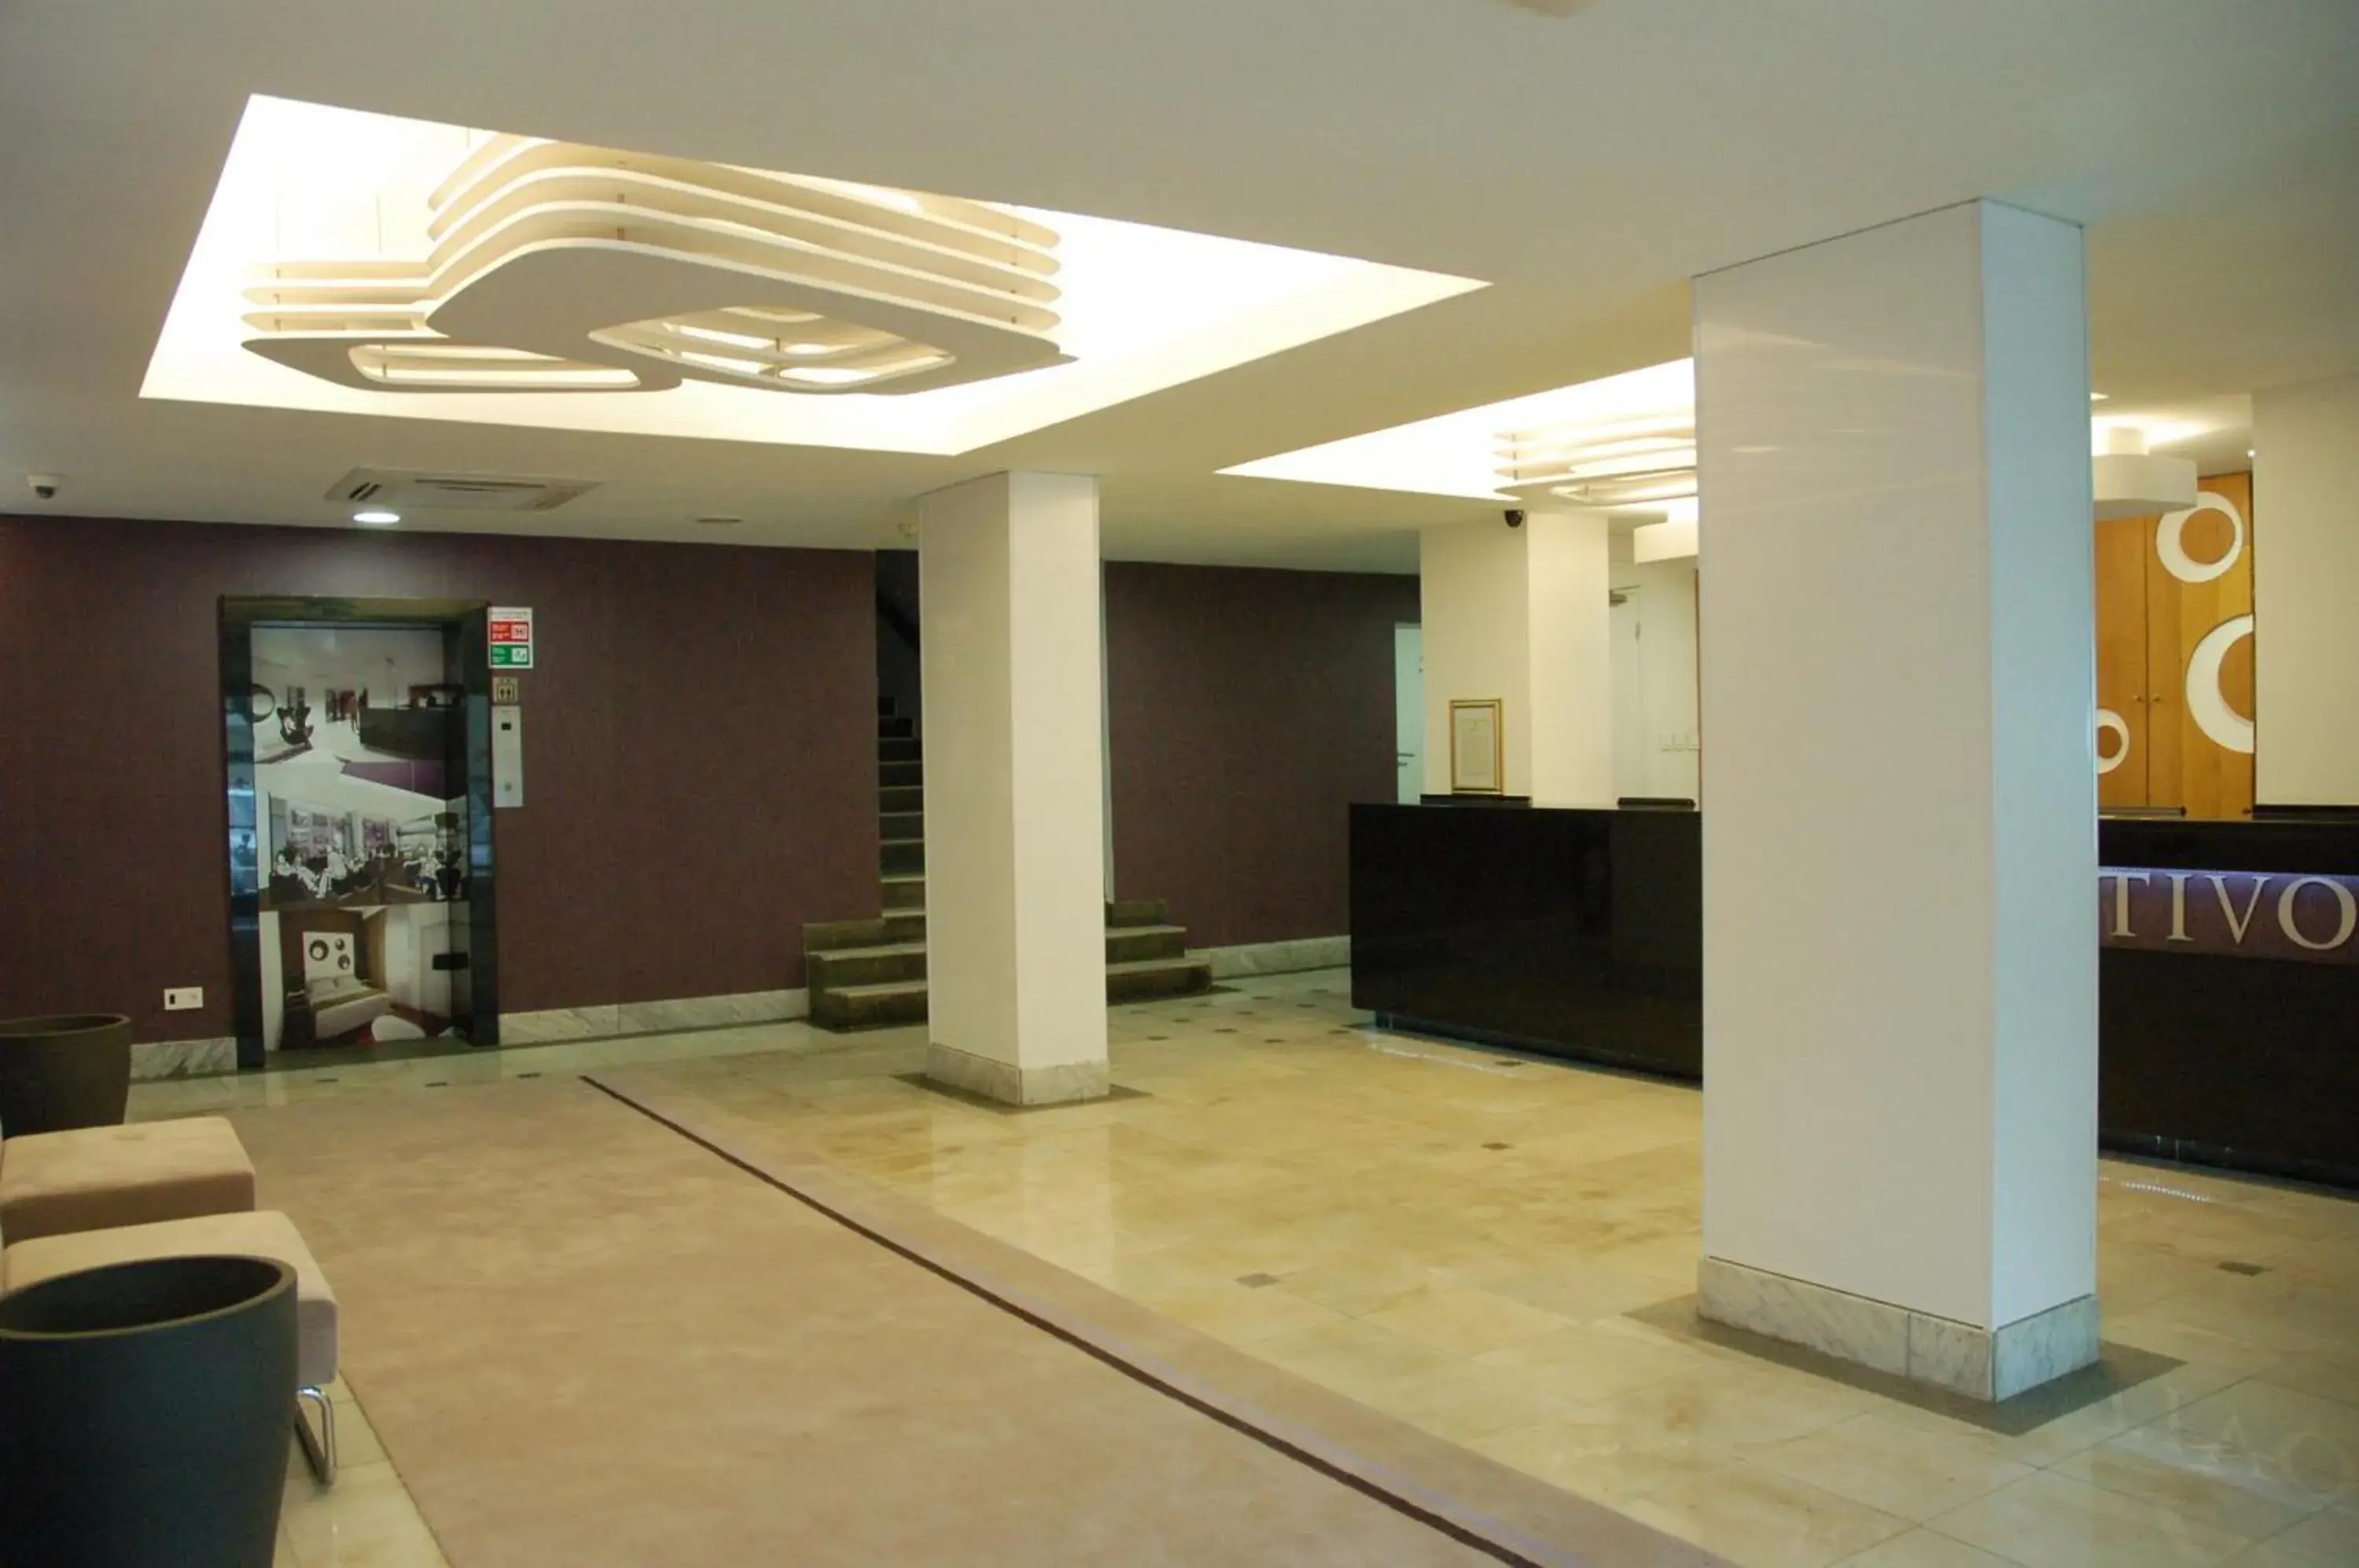 Lobby or reception, Lobby/Reception in Tivoli Maputo